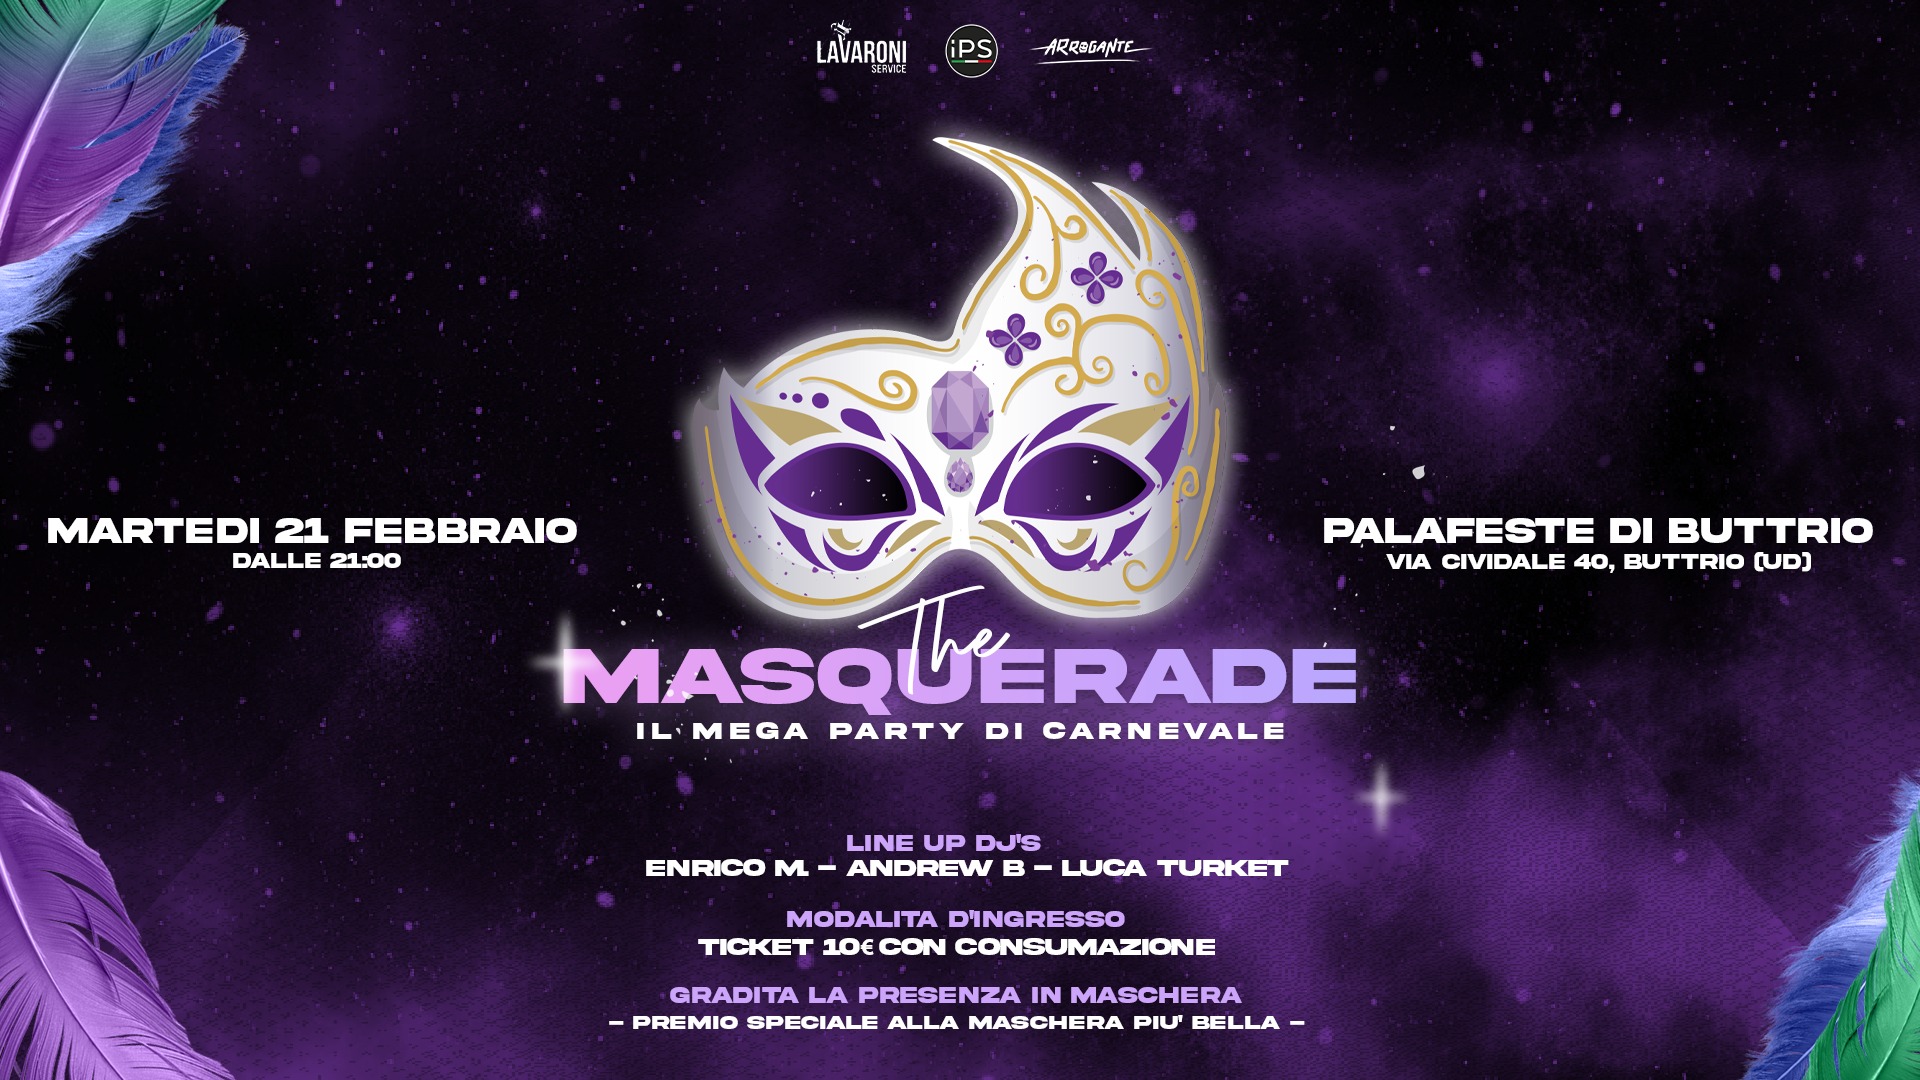 The Masquerade, Il mega party di carnevale